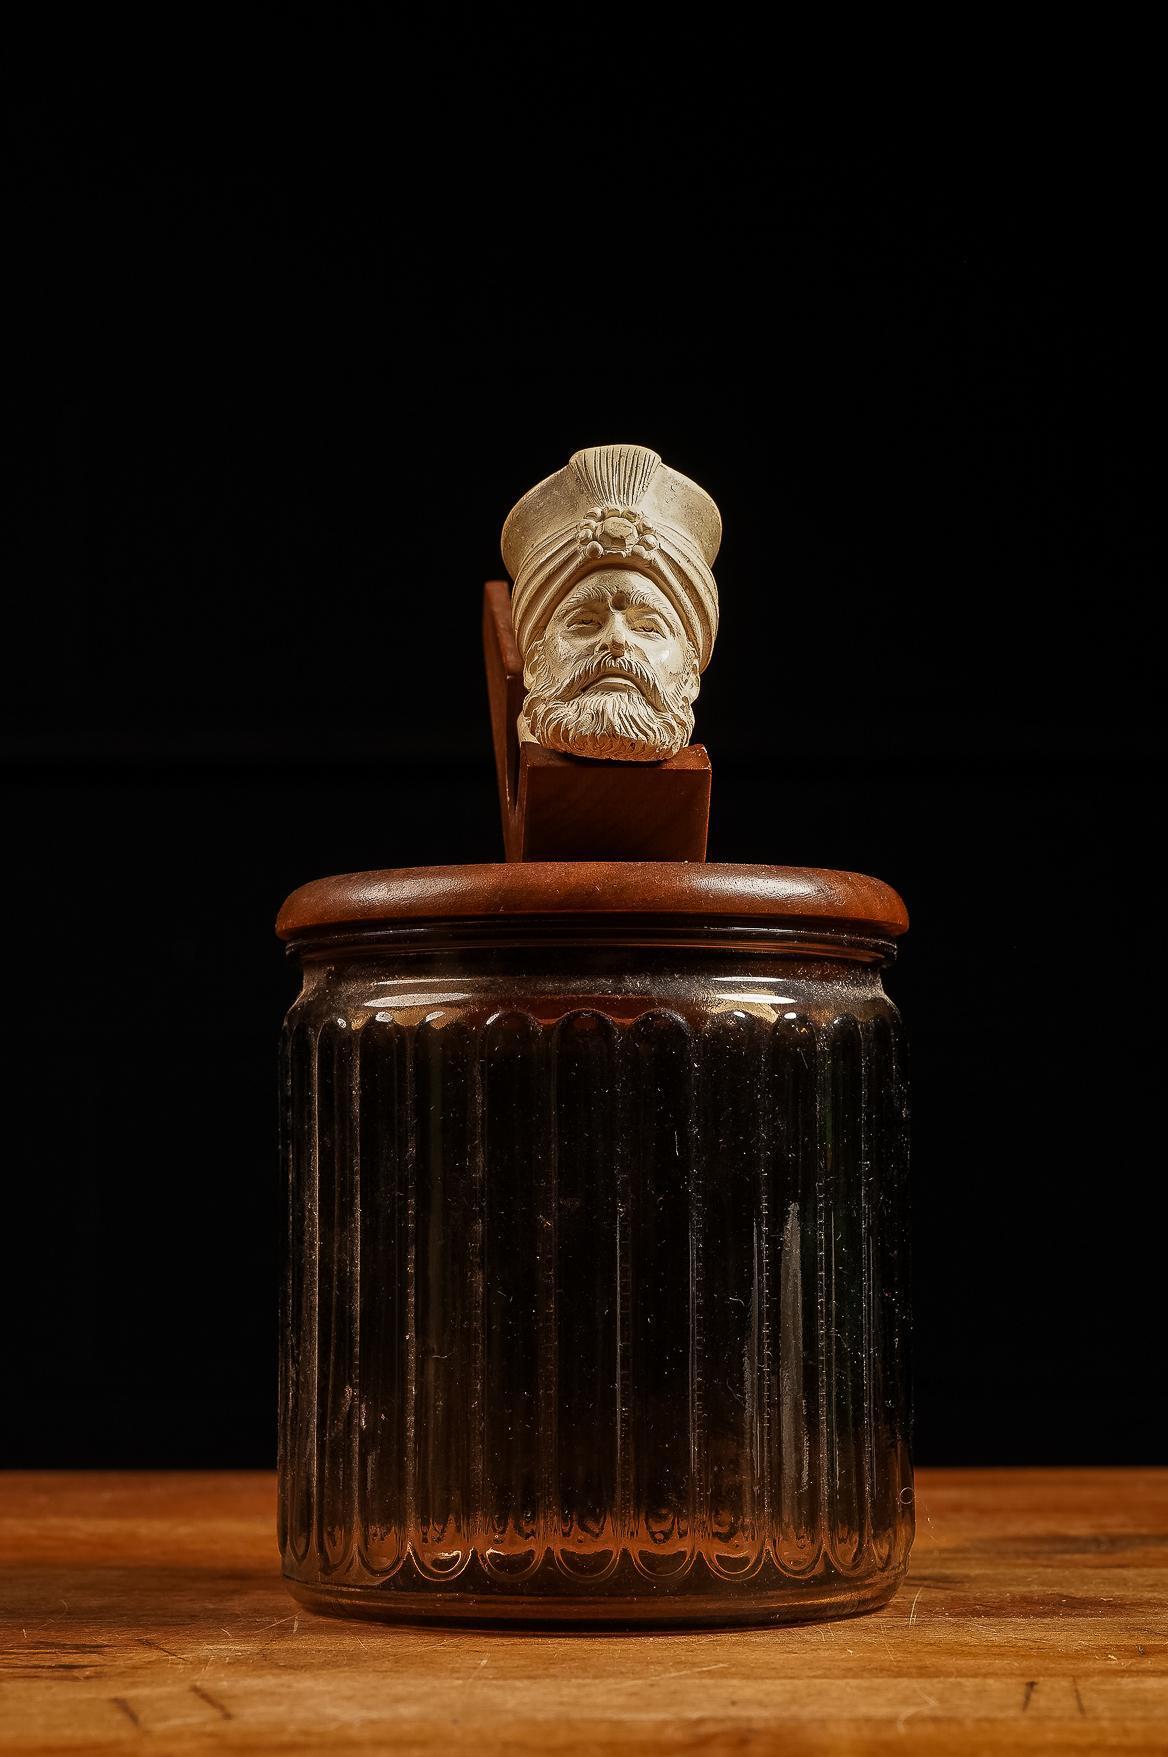 Turkish Man Meerschaum Pipe and Tobacco Jar